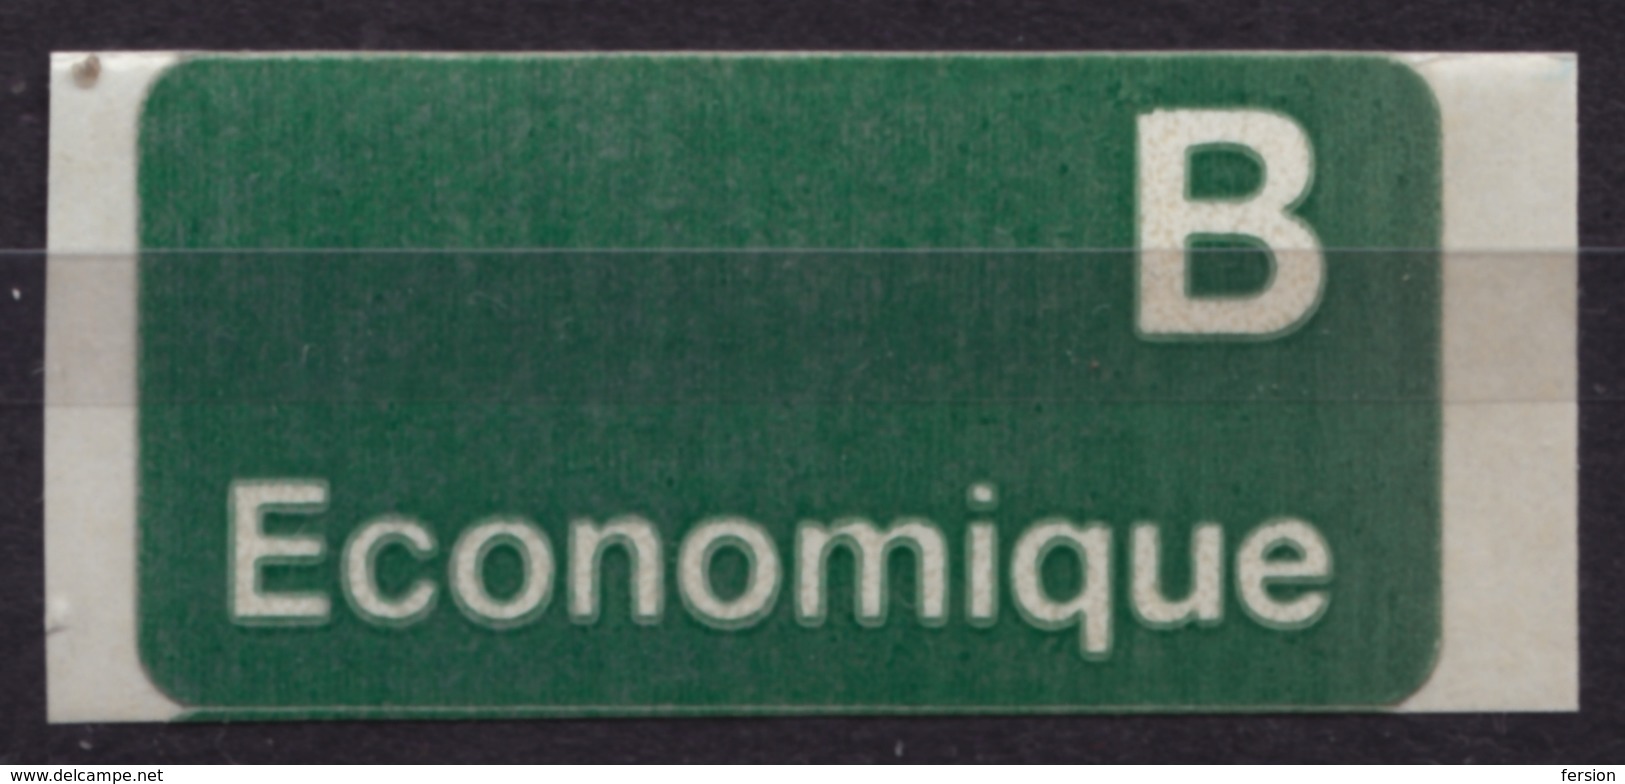 B Economique Vignette Label SEWDEN SVERIGE Self Adhesive Not Used - Timbres De Distributeurs [ATM]